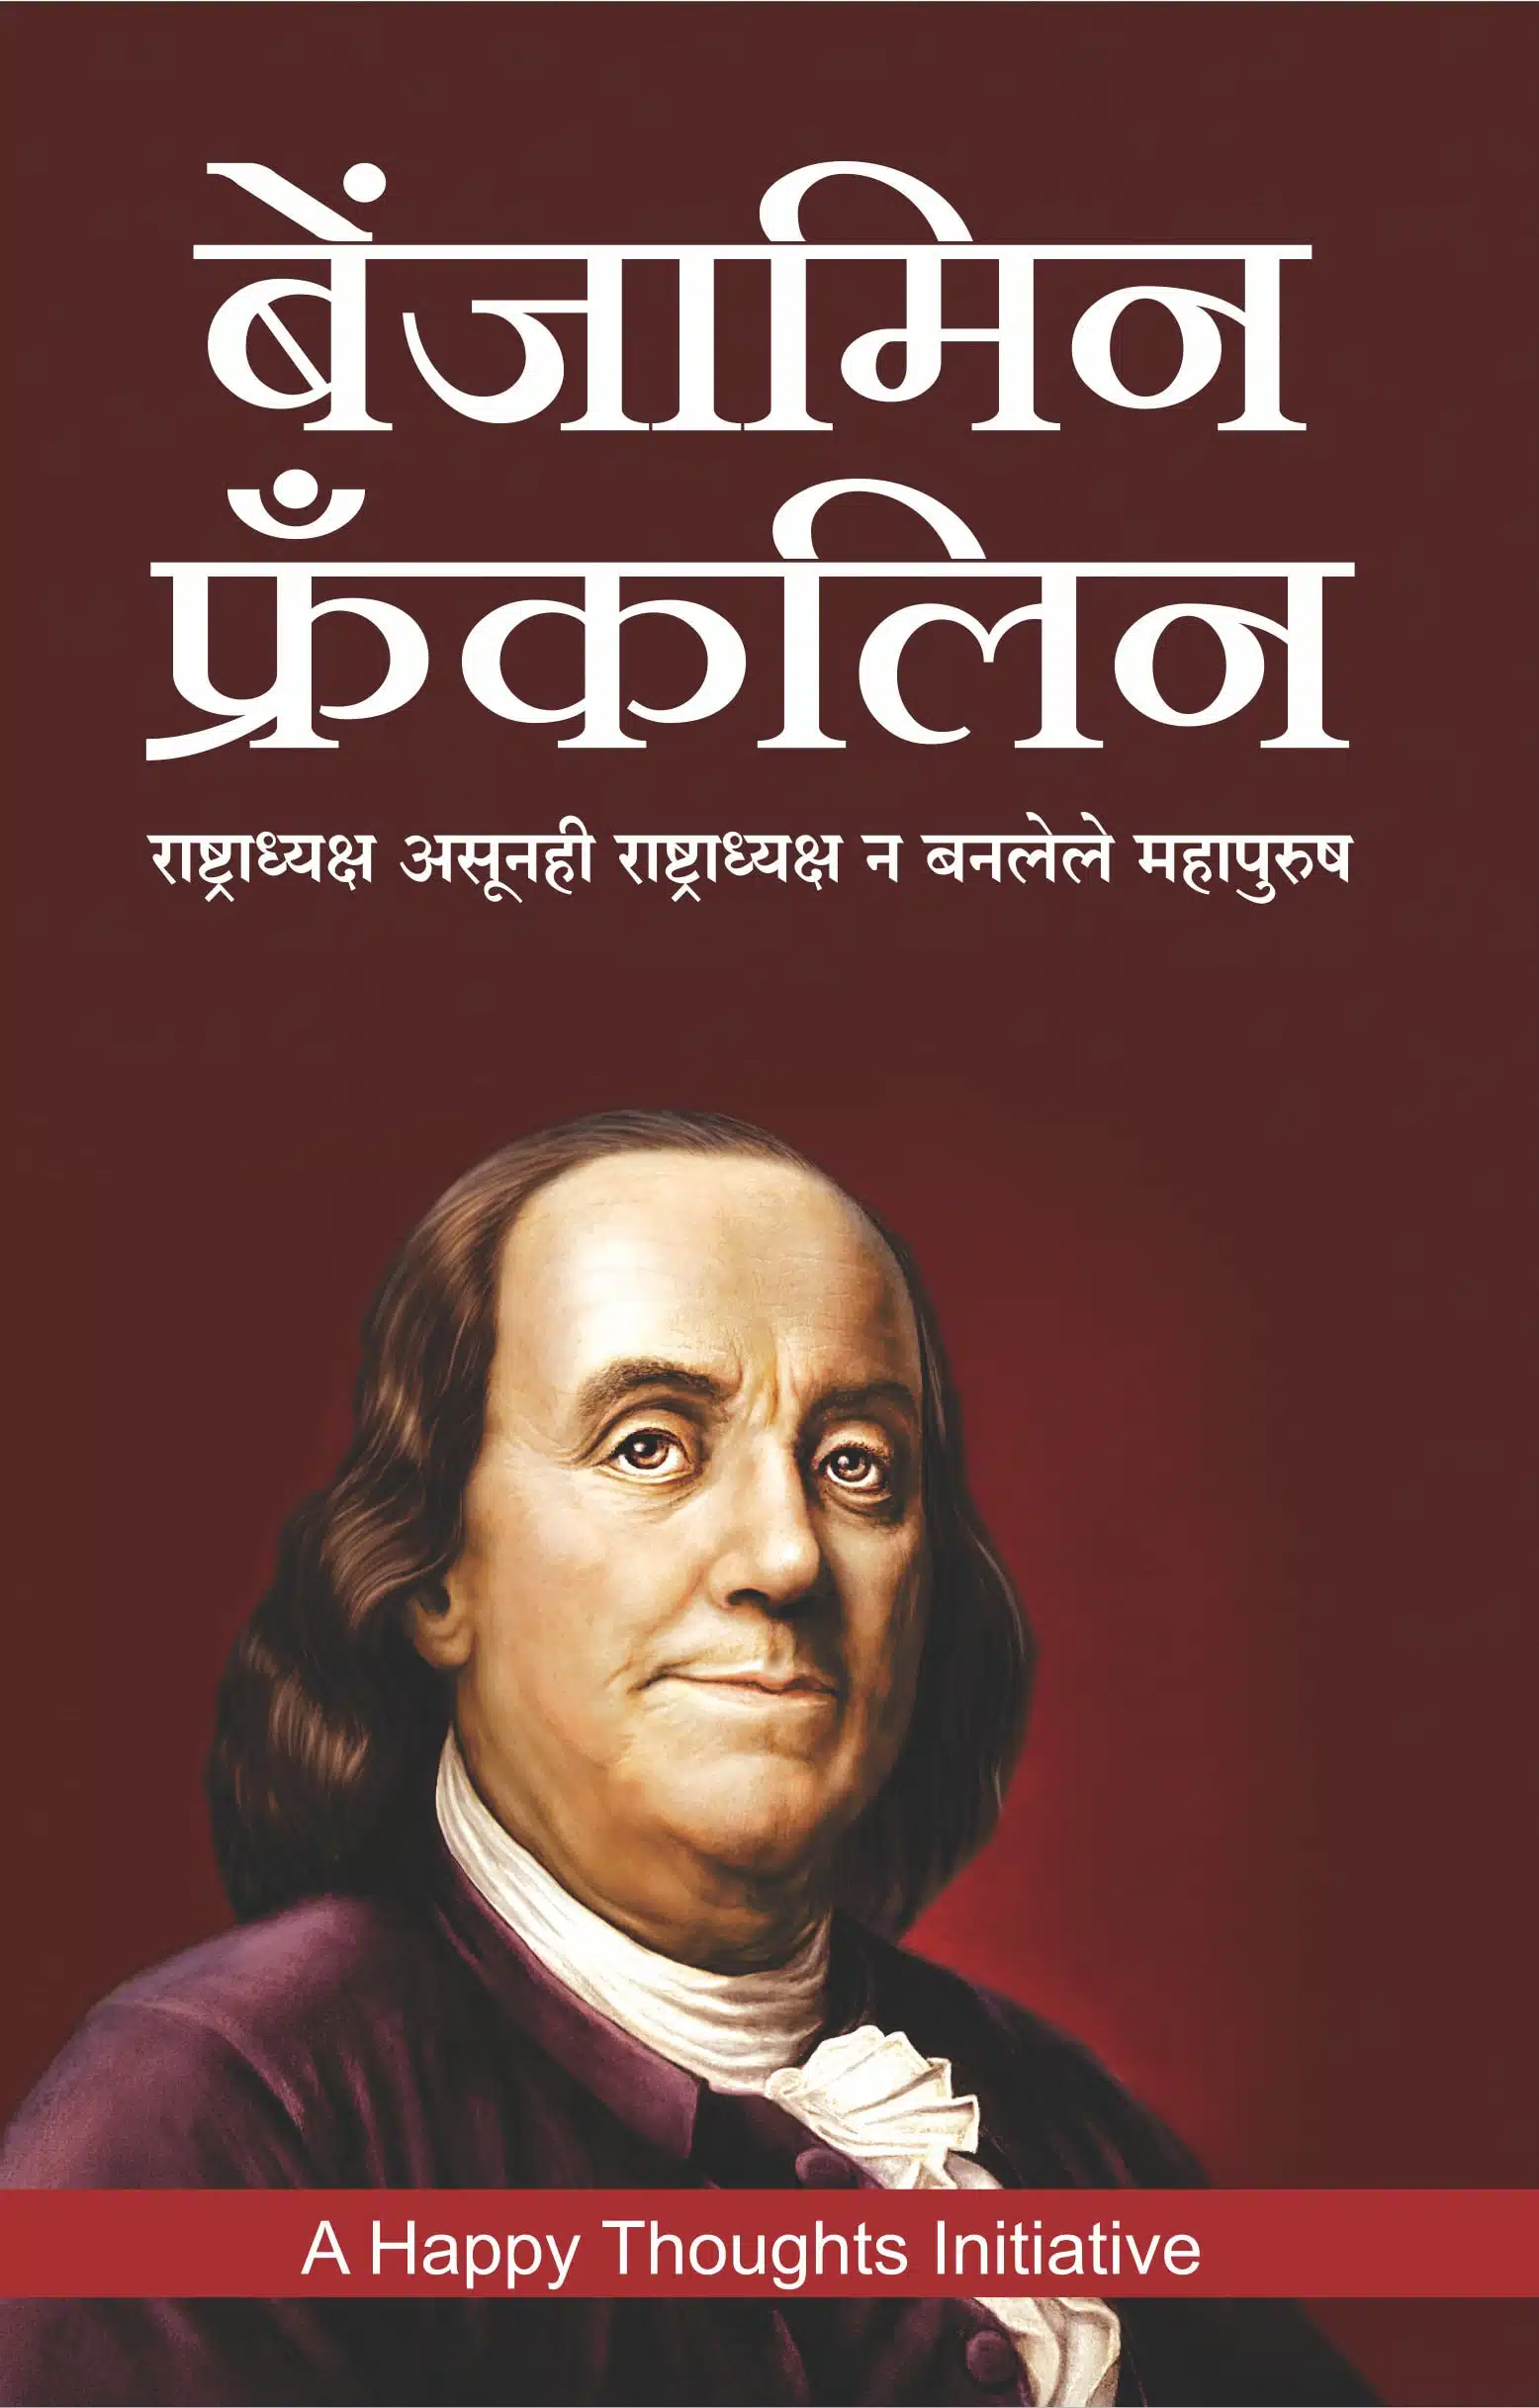 Benjamin Franklin -Rashtradhyaksh Asunhi Rashtradhyaksh N Banlele Mahapurush (Marathi)